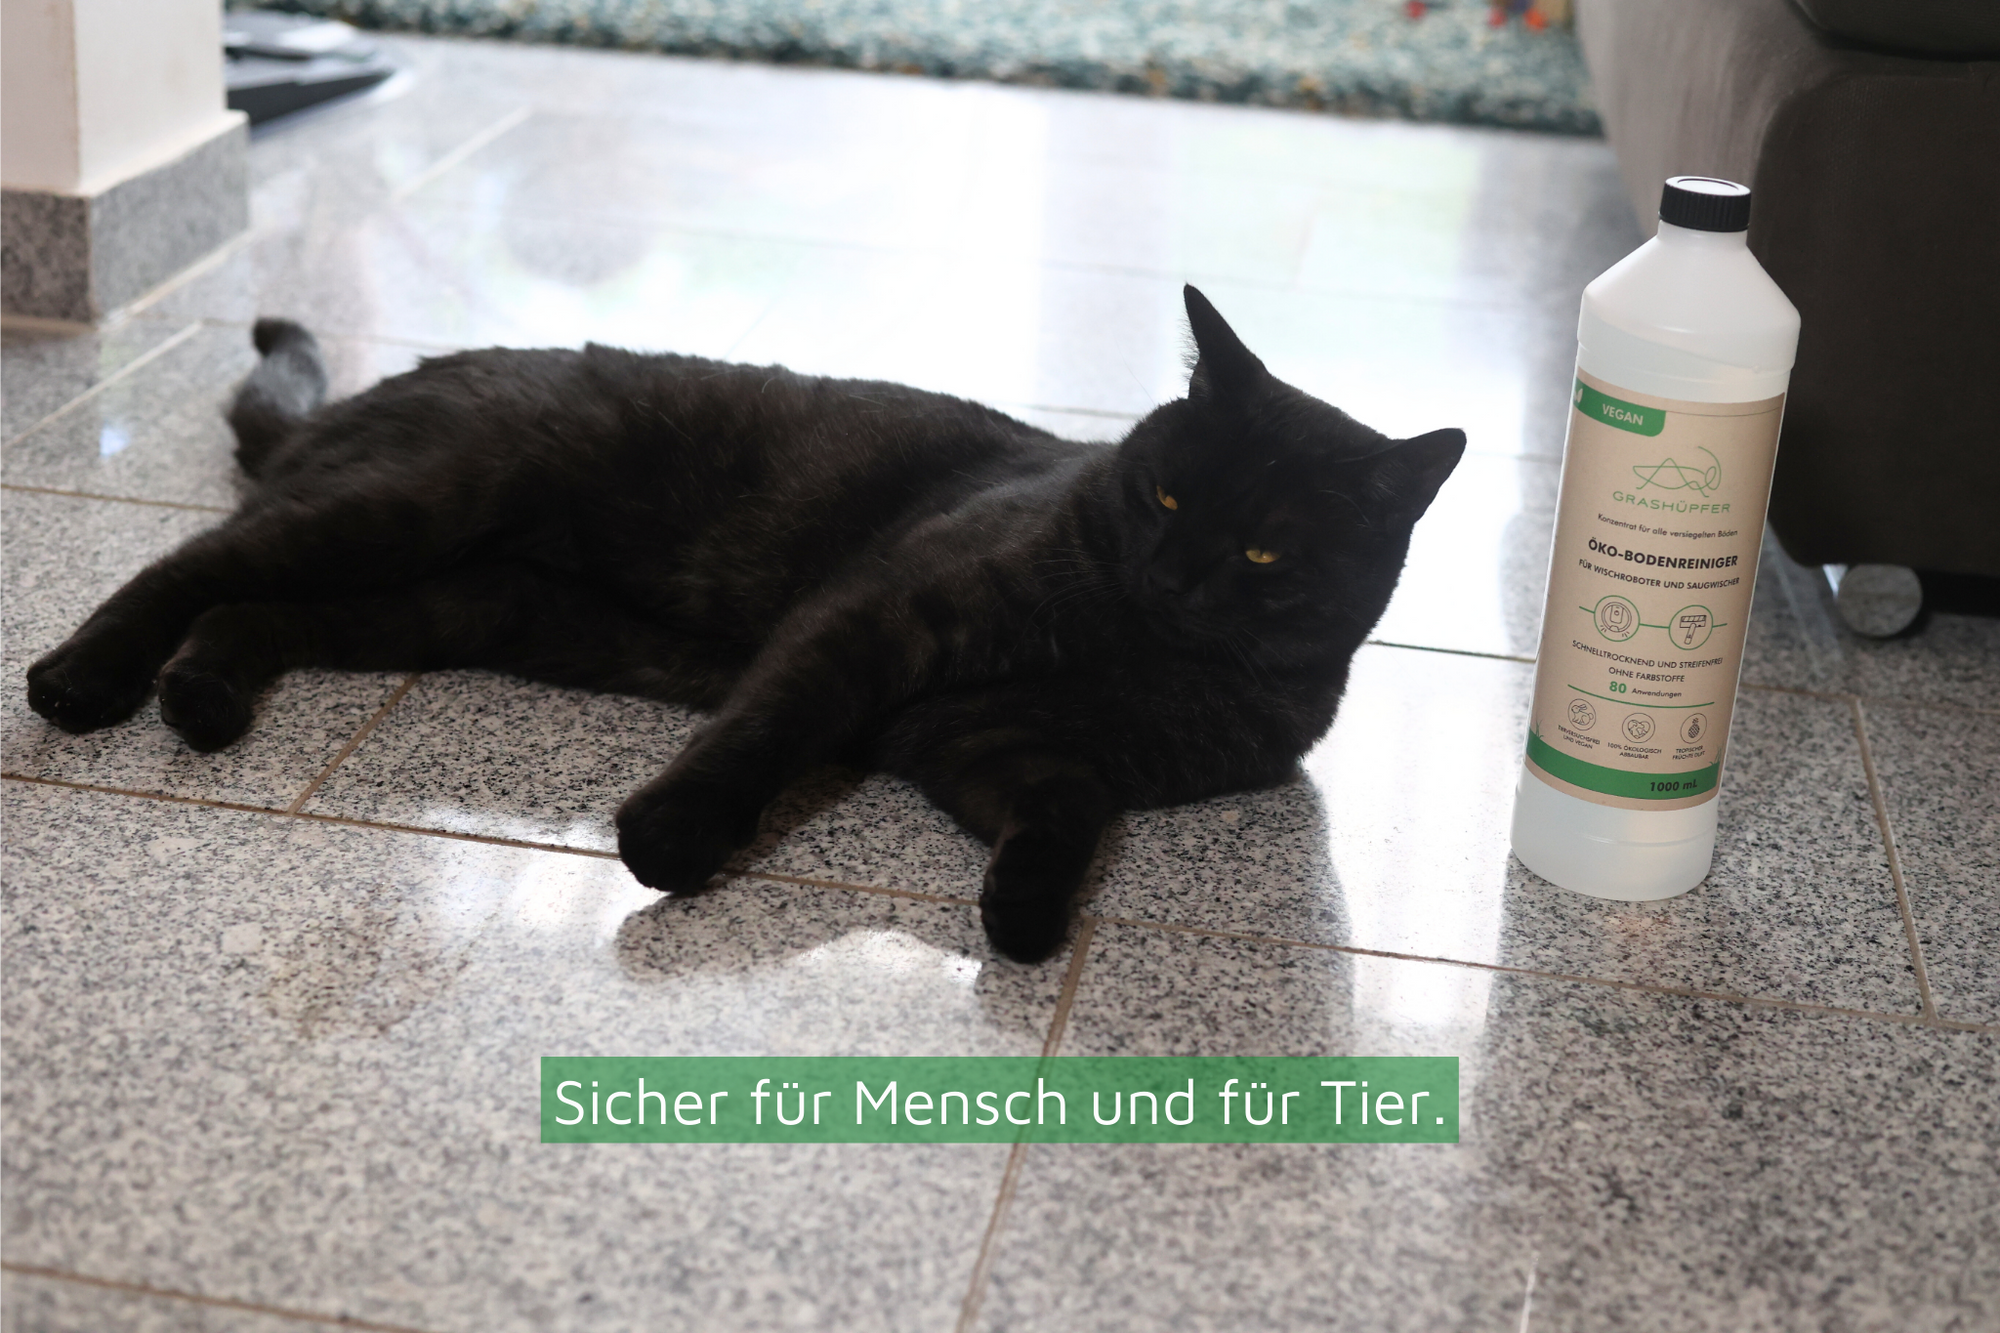 Sicher_fuer_Mensch_und_fuer_Tier